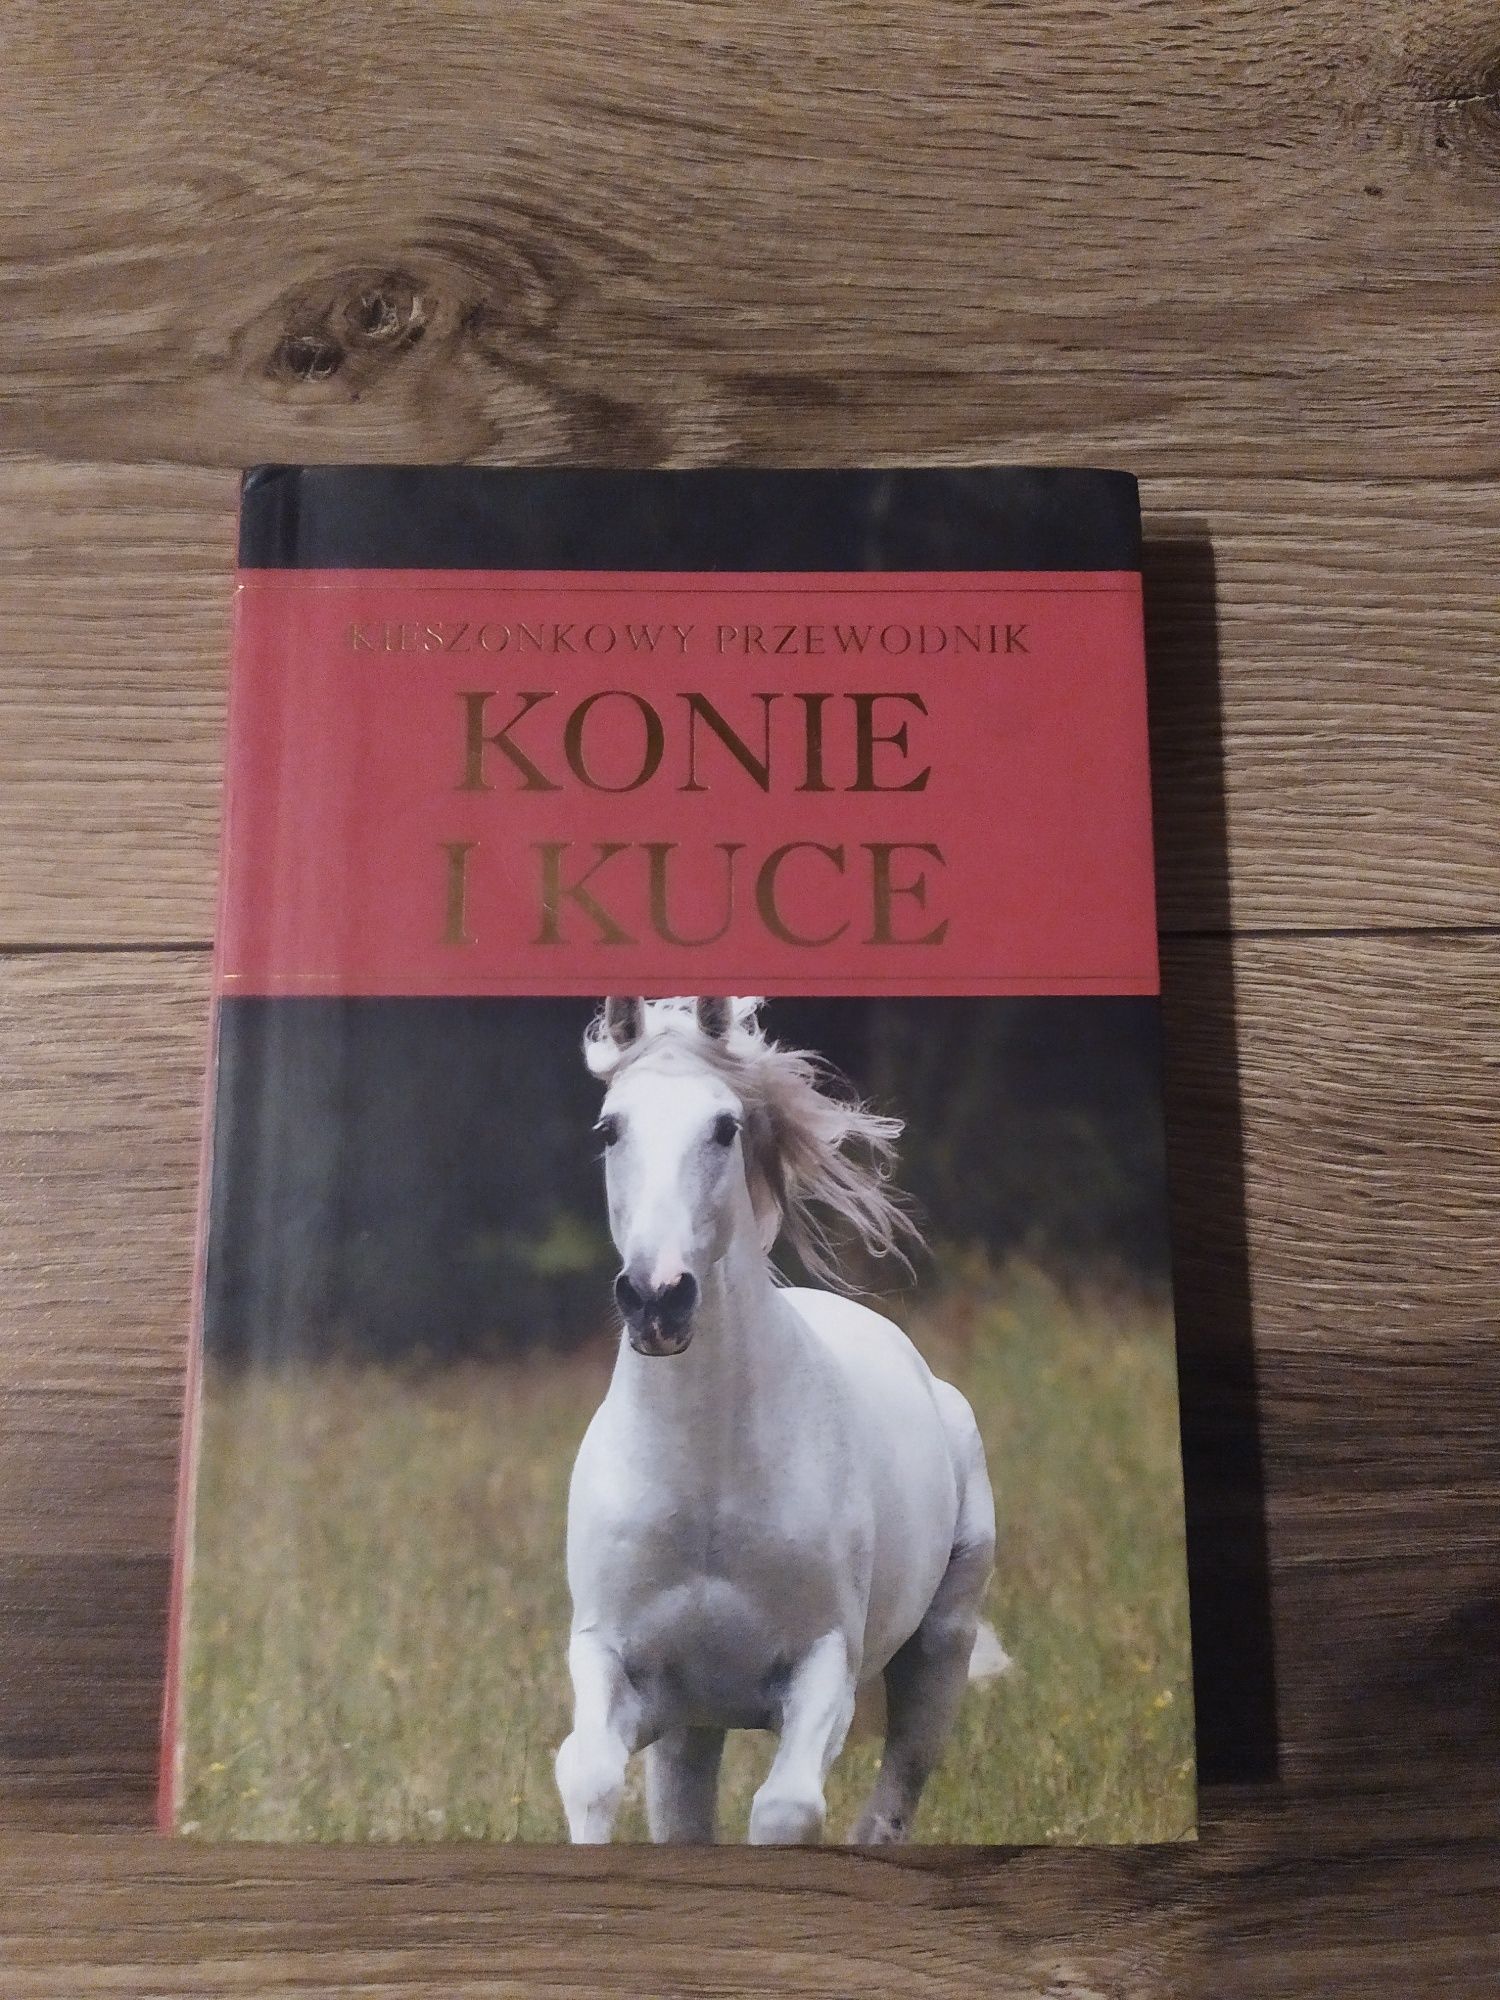 Książka "Konie i kuce"